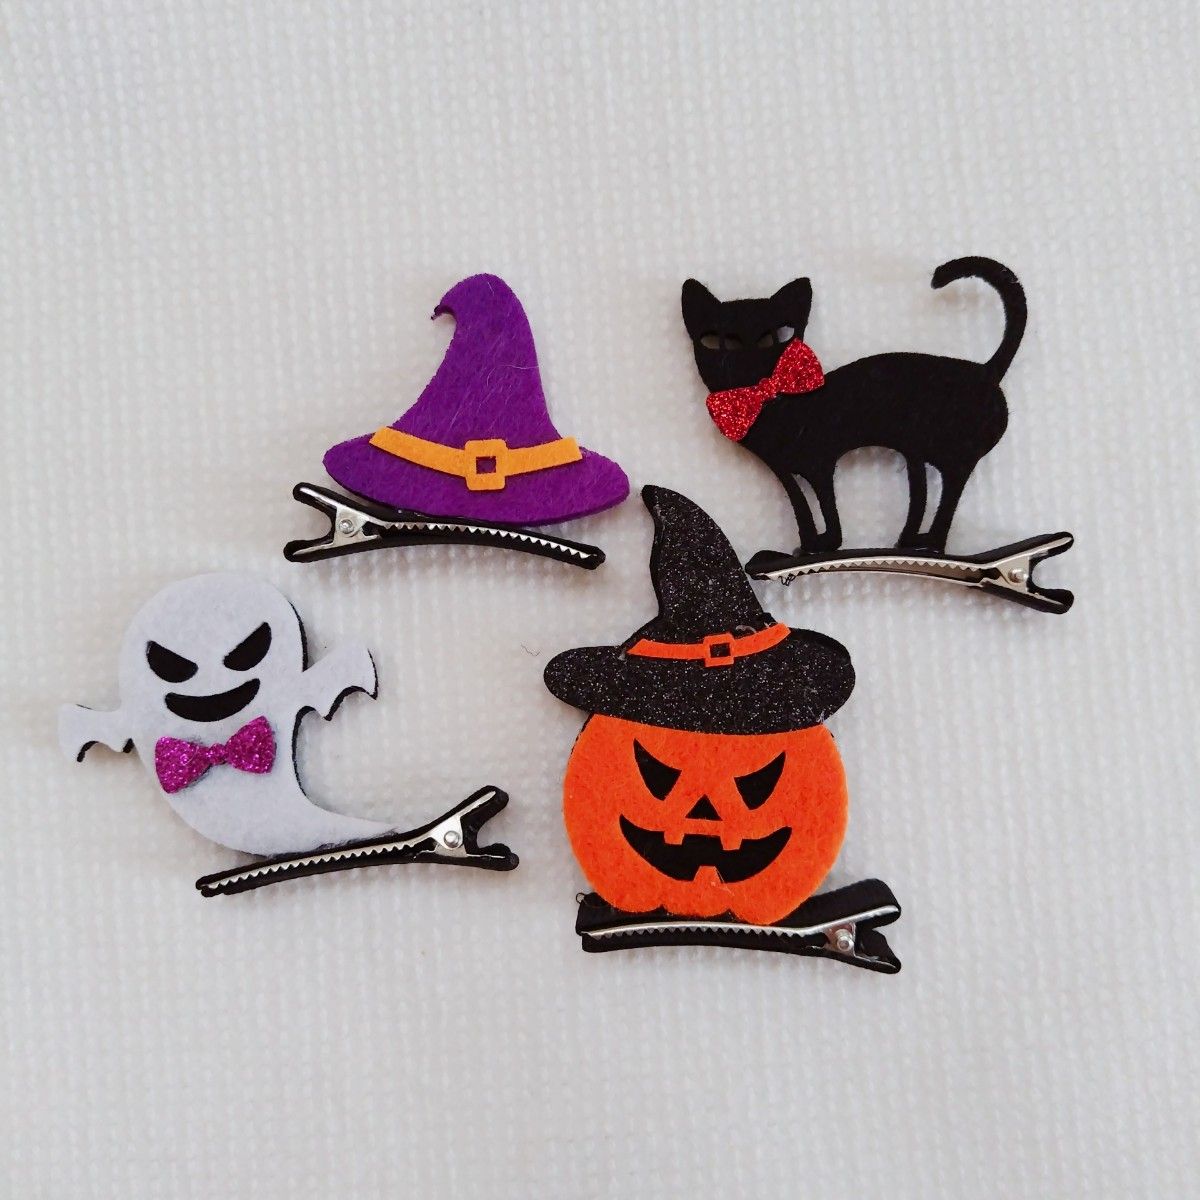 【4個セット】 ハロウィン  ヘアクリップ 髪留め  仮装 コスプレ かぼちゃ 幽霊 黒猫 帽子 コスチューム  パーティー  